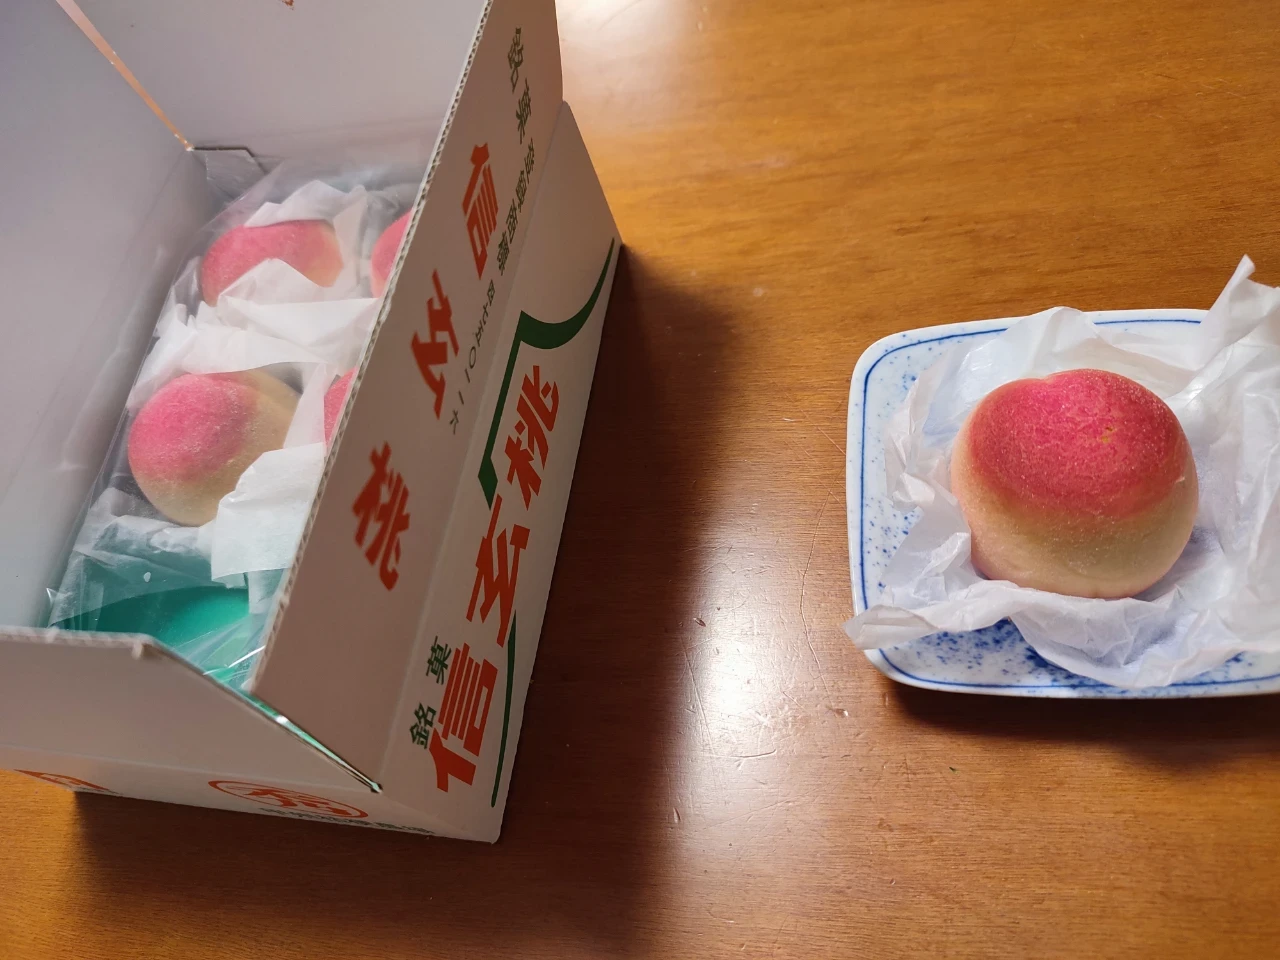 信玄桃という和菓子の写真。外見が桃に似ていて、果物用のダンボール箱を模したパッケージに入っている。